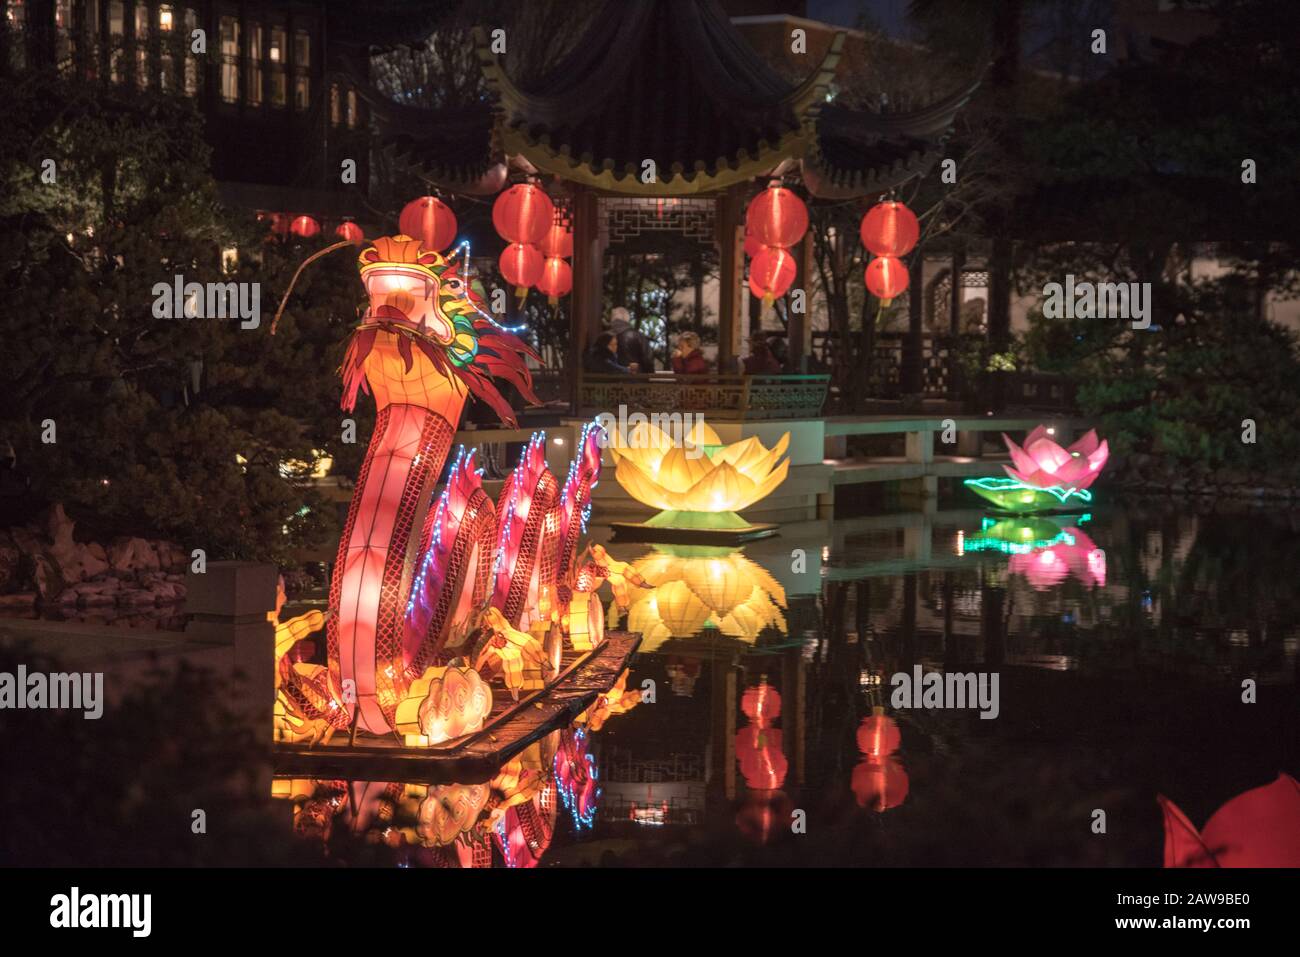 La célébration du nouvel an lunaire chinois aux jardins Lan su de Portland, Oregon, est pleine de lumière et de drame. Banque D'Images